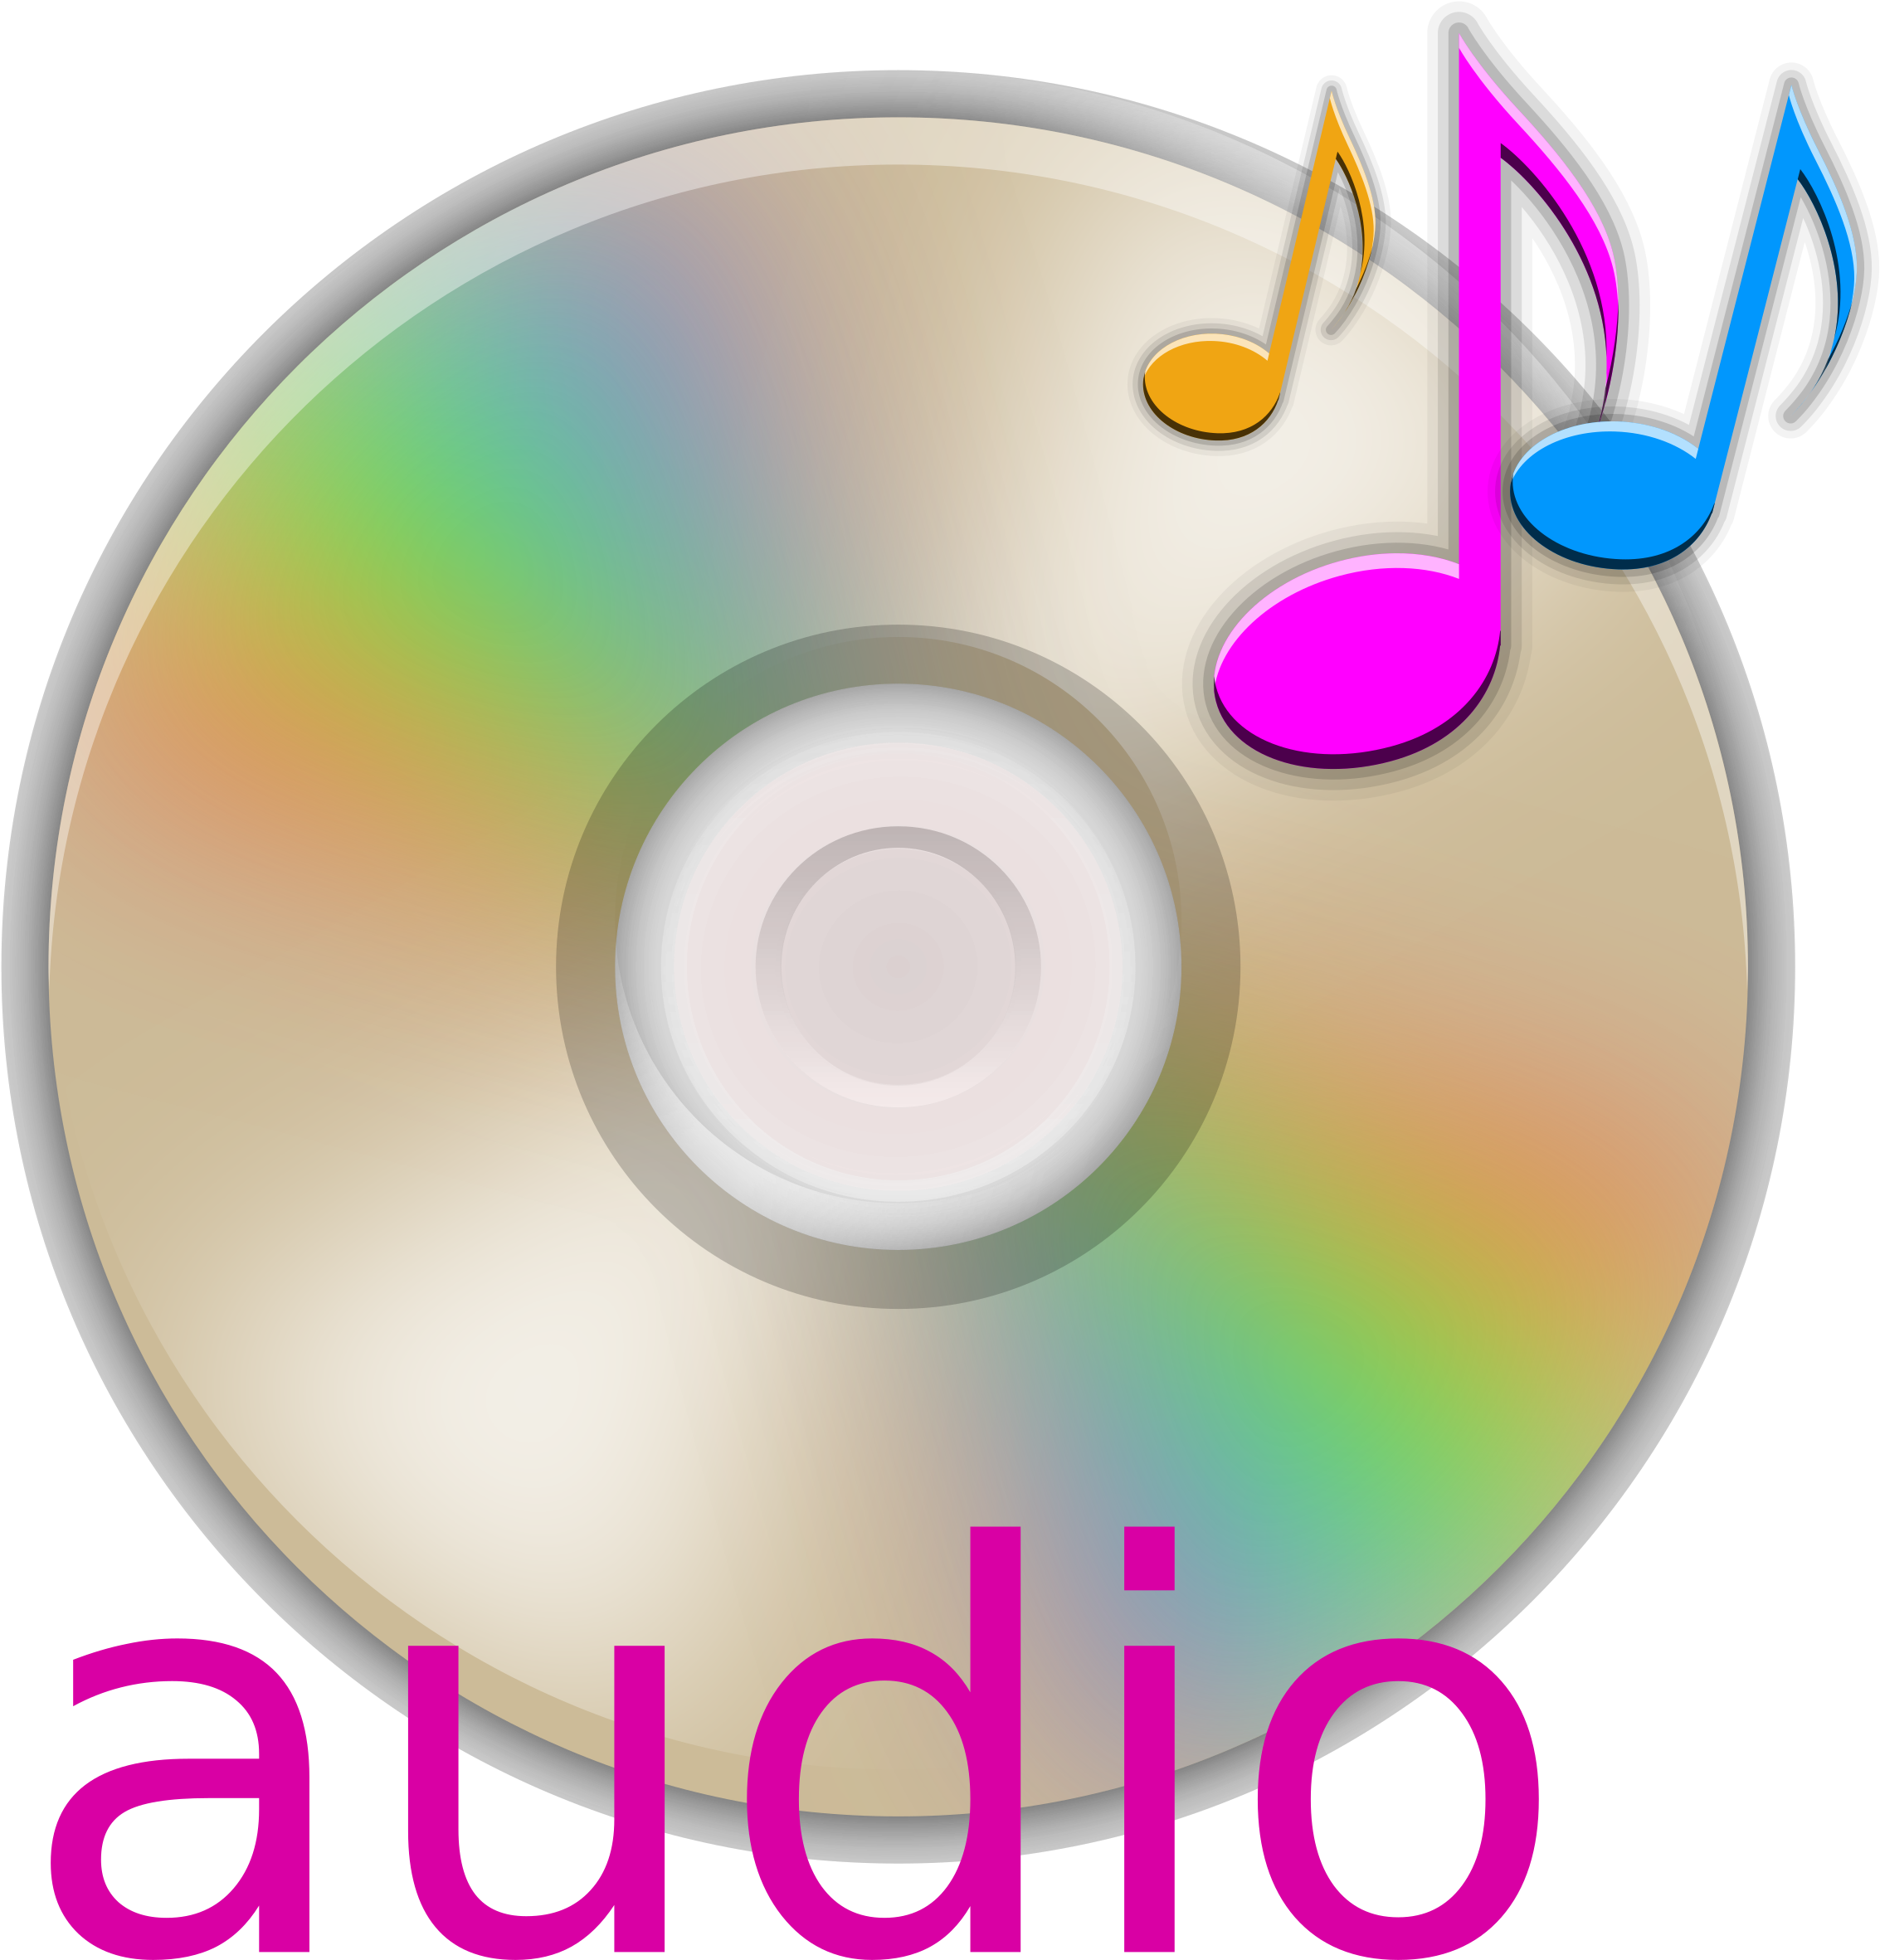 Audio Cd - Audio Clipart (2400x2400)